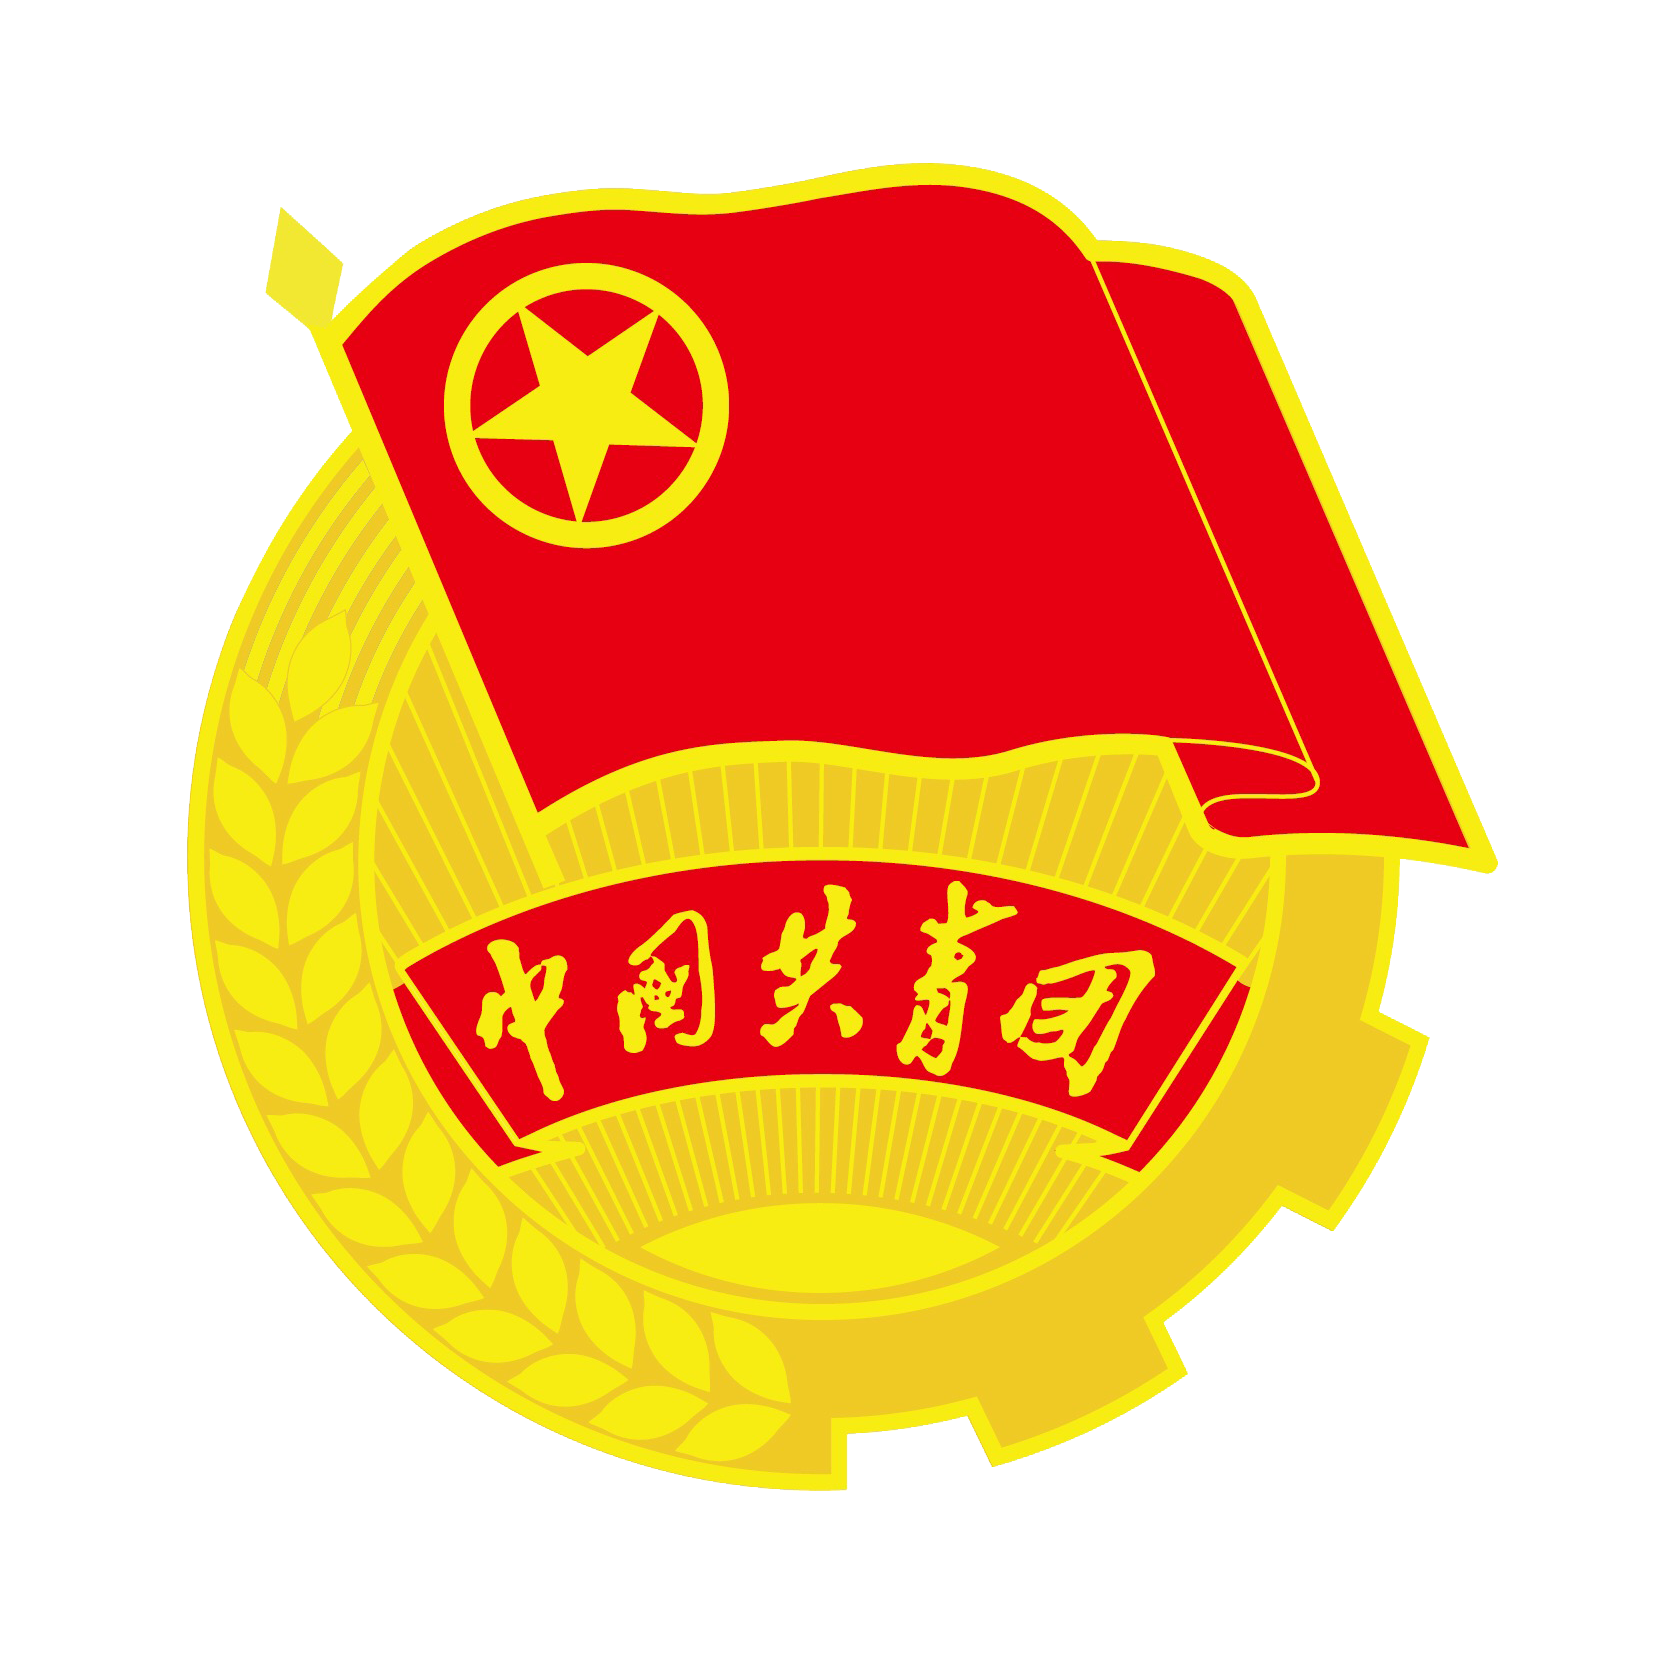 中國共產主義青年團中央委員會(中國共產主義青年團委員會)